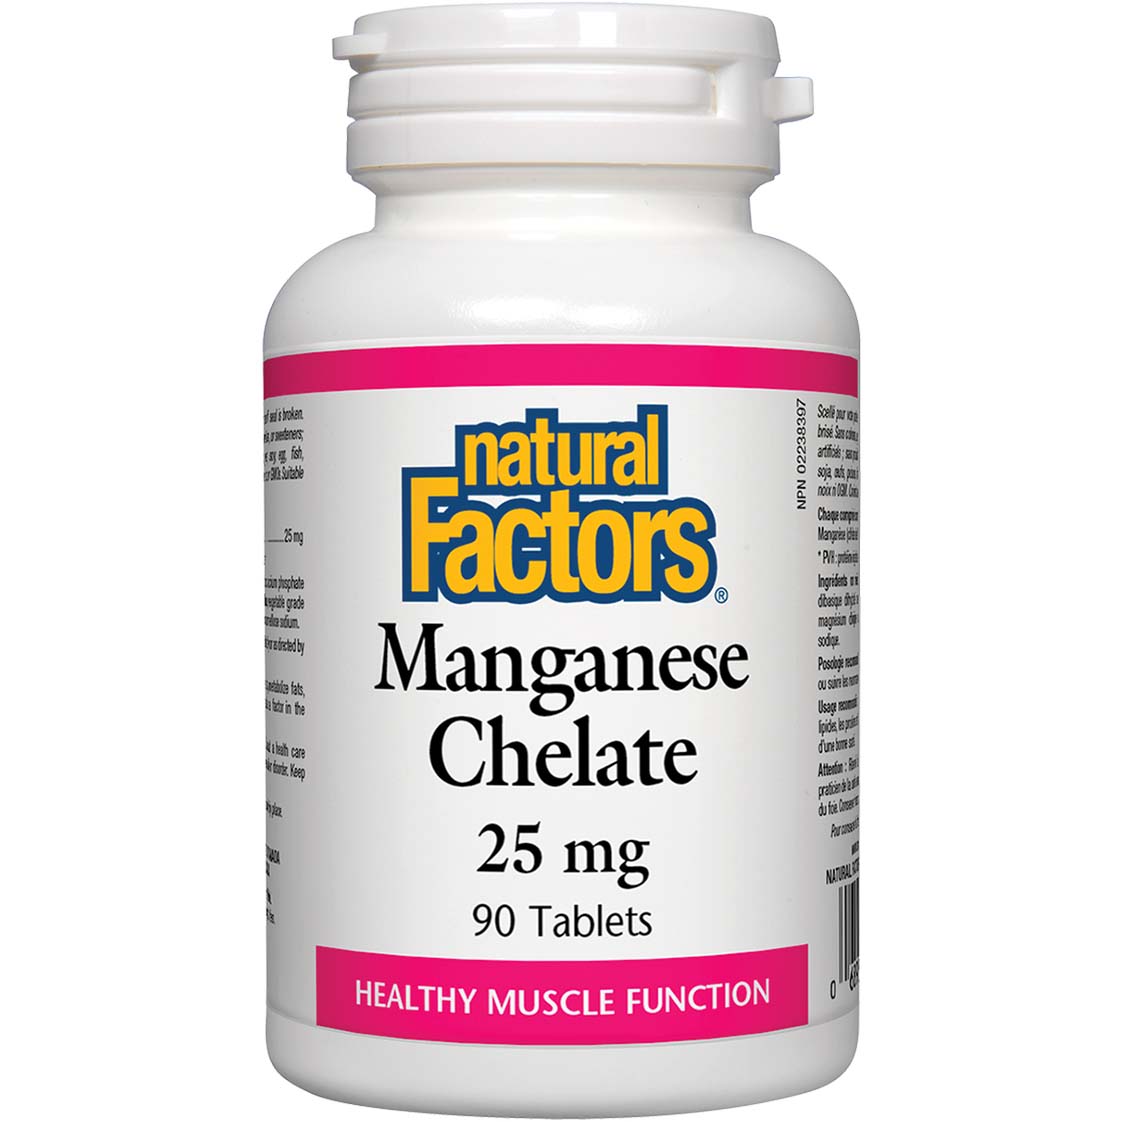 Natural Factors Manganese Chelate, 25 mg, 90 Tablets